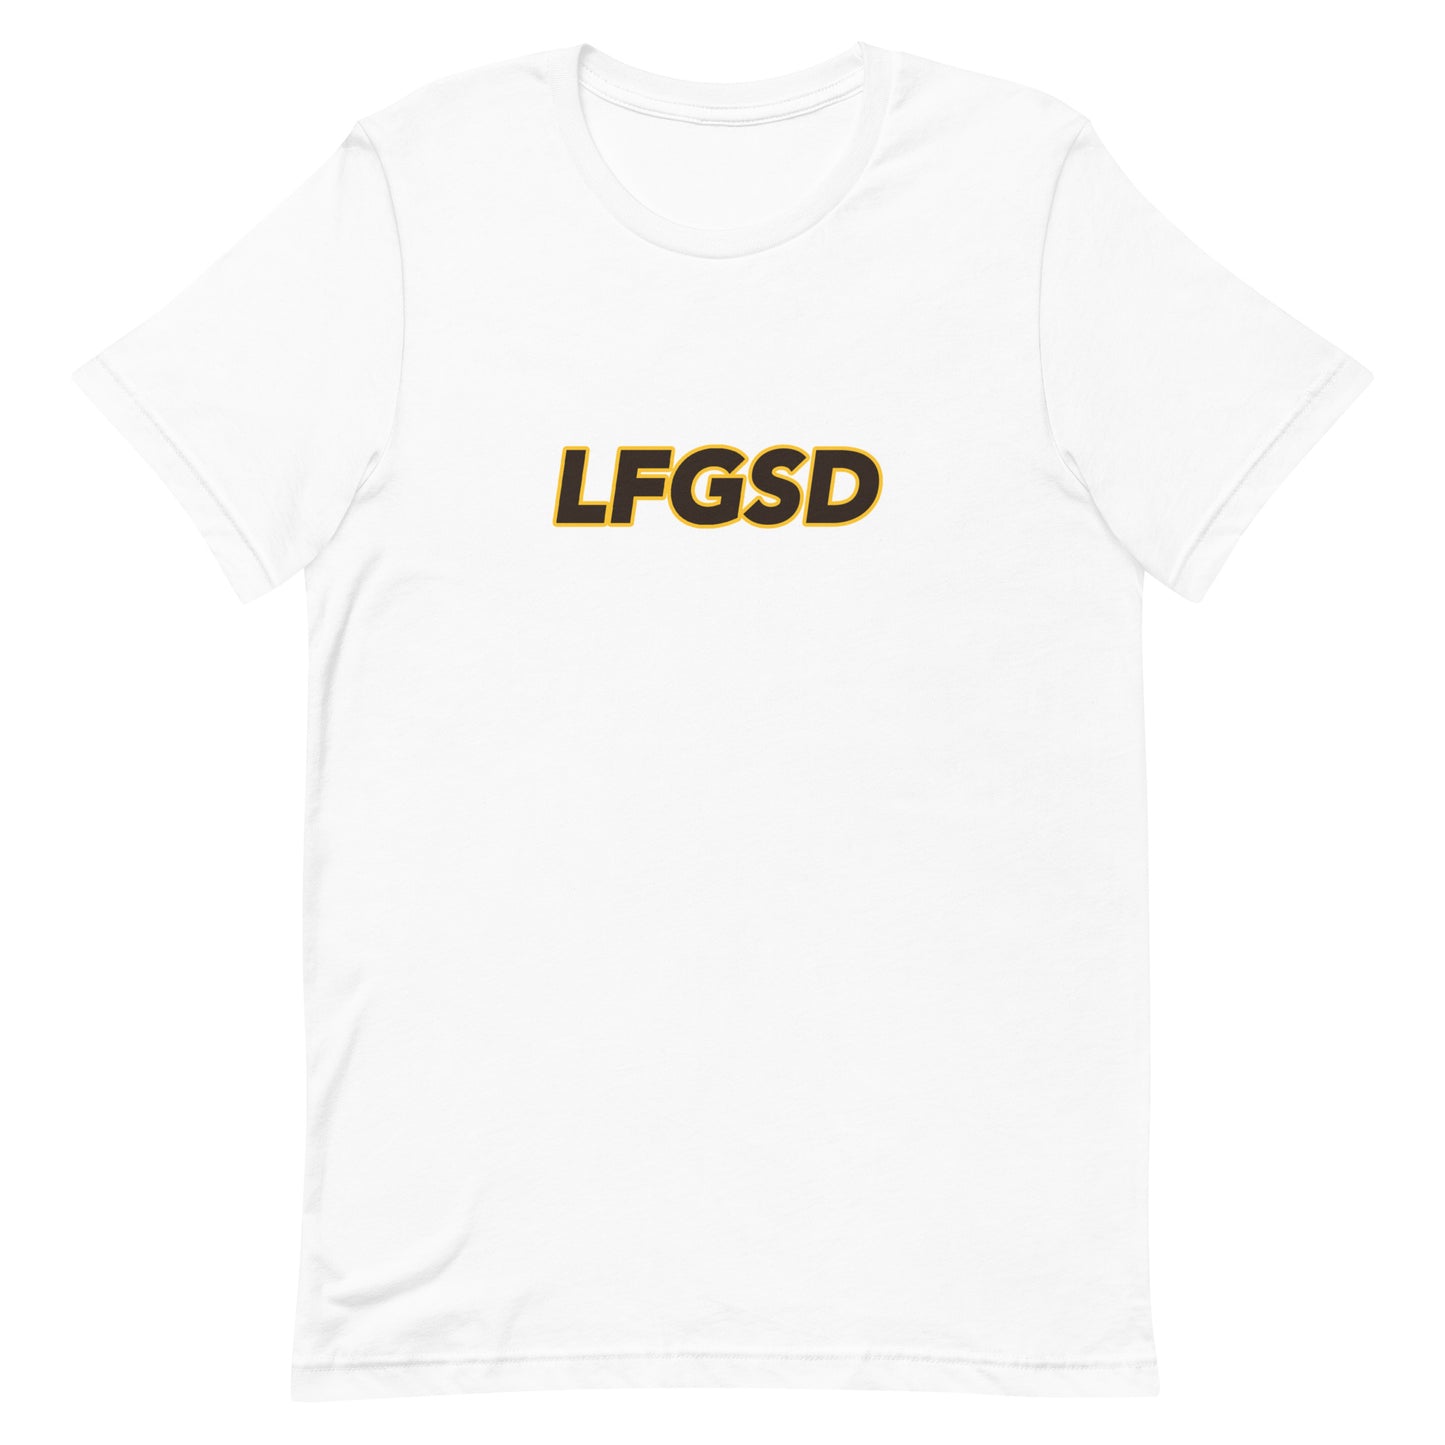 LFGSD Brown/Yellow T-Shirt